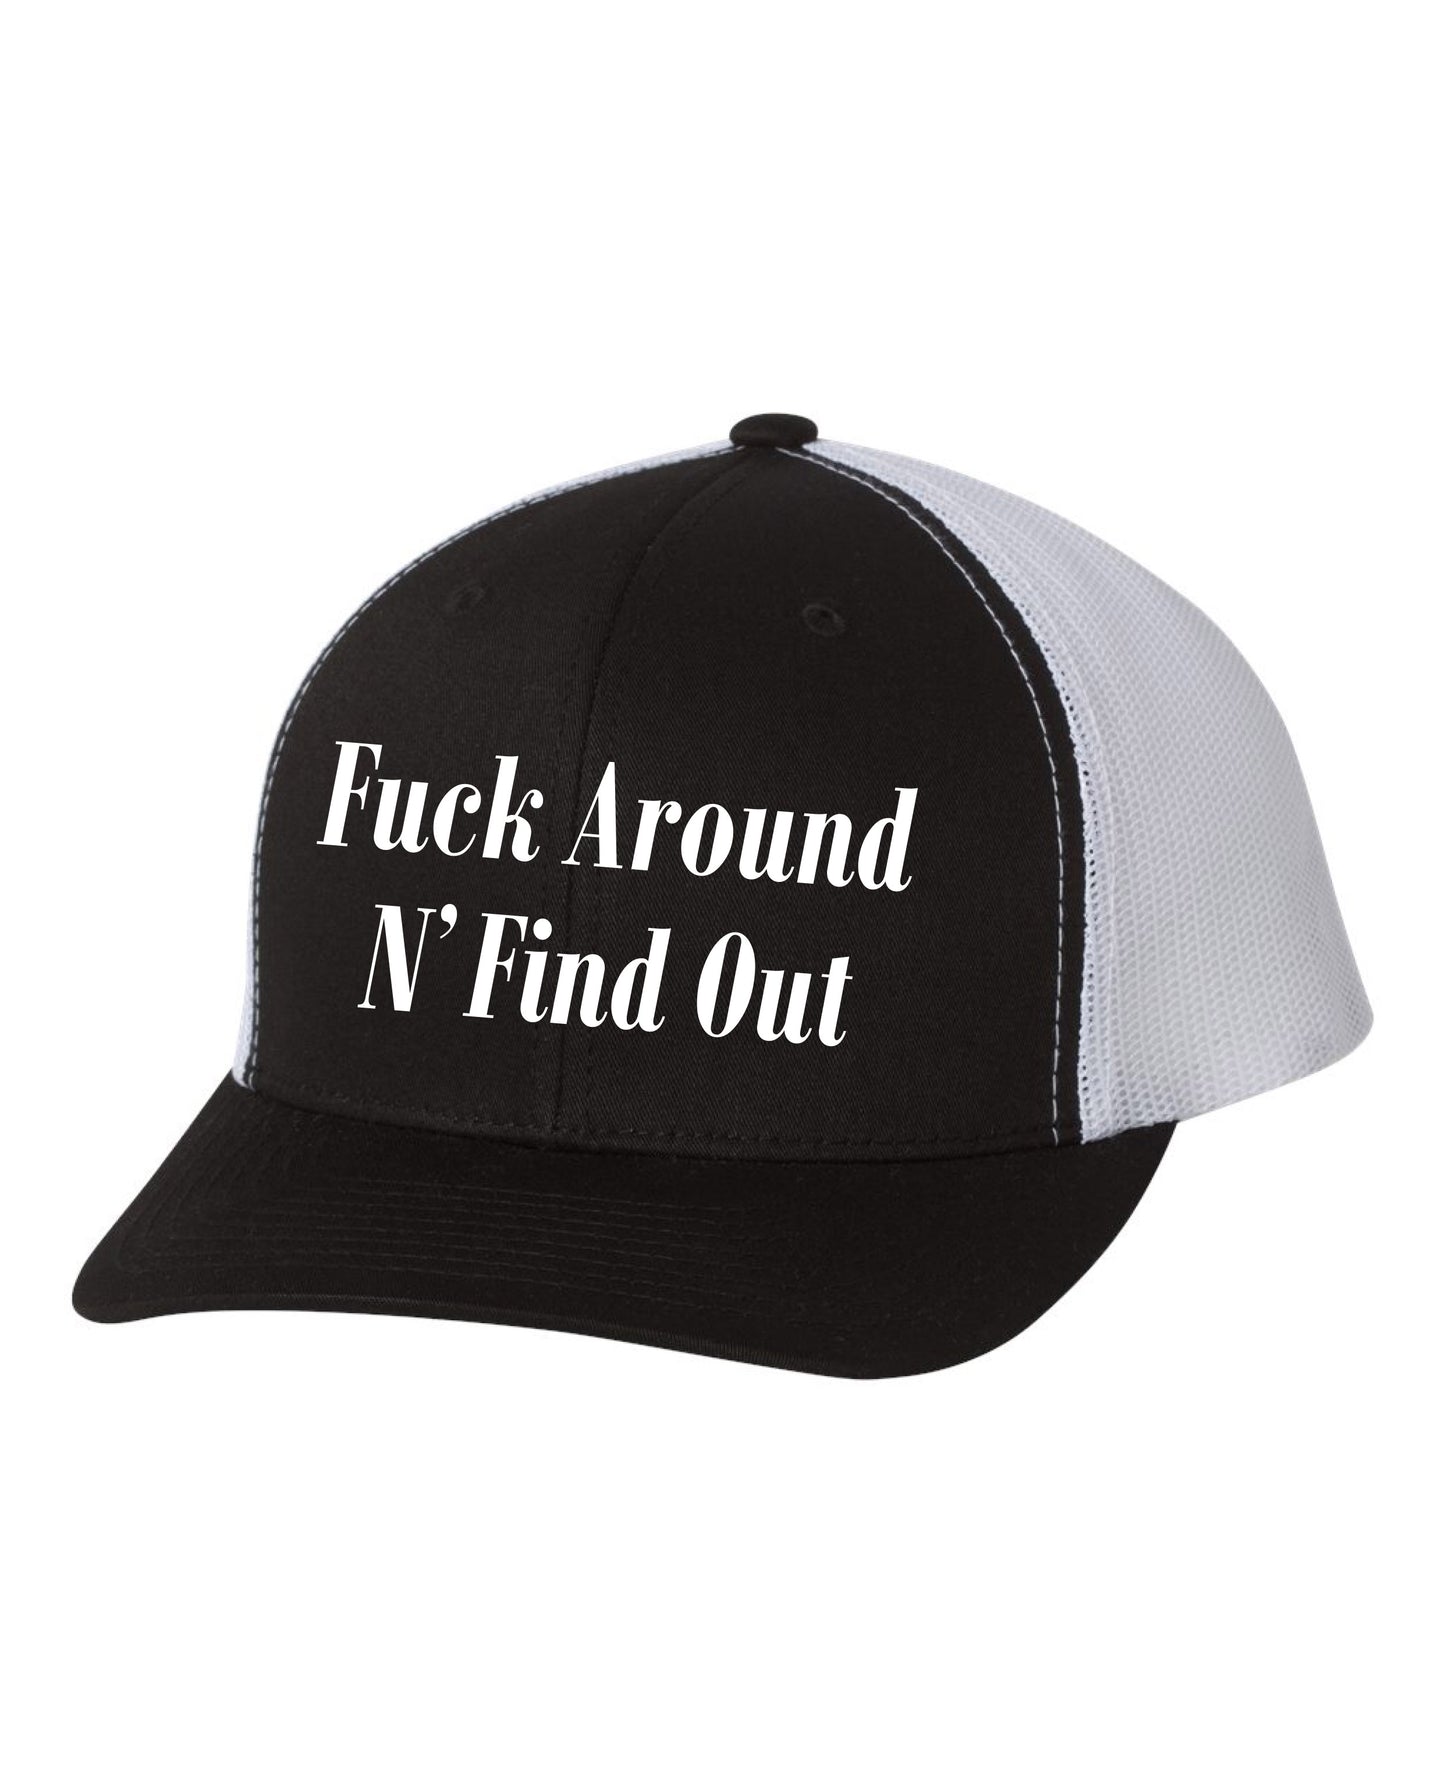 FAFO Trucker Hat